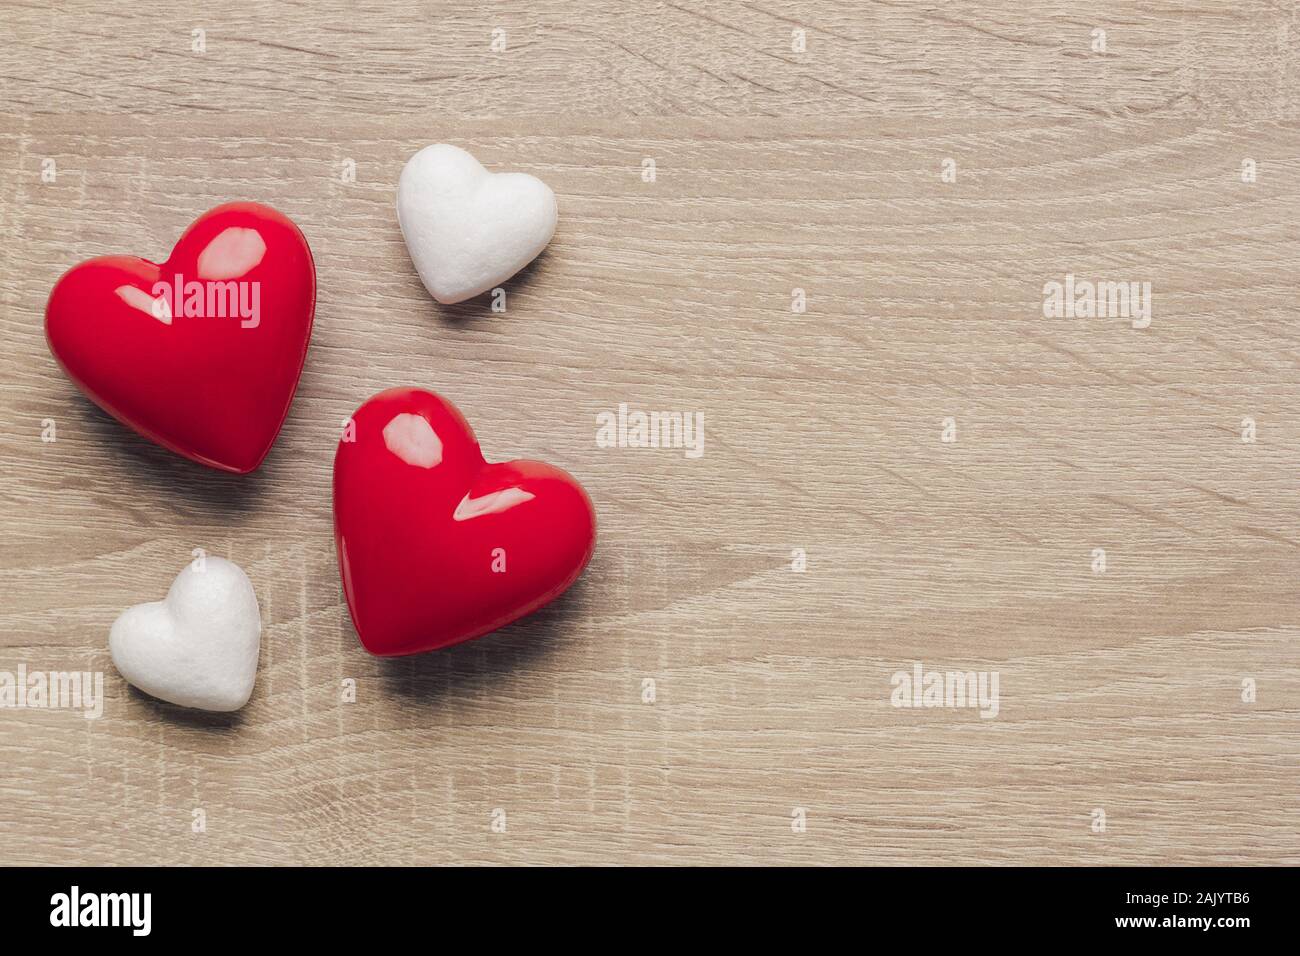 Stock photo de deux coeurs en plastique rouge et blanc deux cœurs sur un fond de bois. Le cœur sur le côté gauche avec un espace réservé au texte Banque D'Images